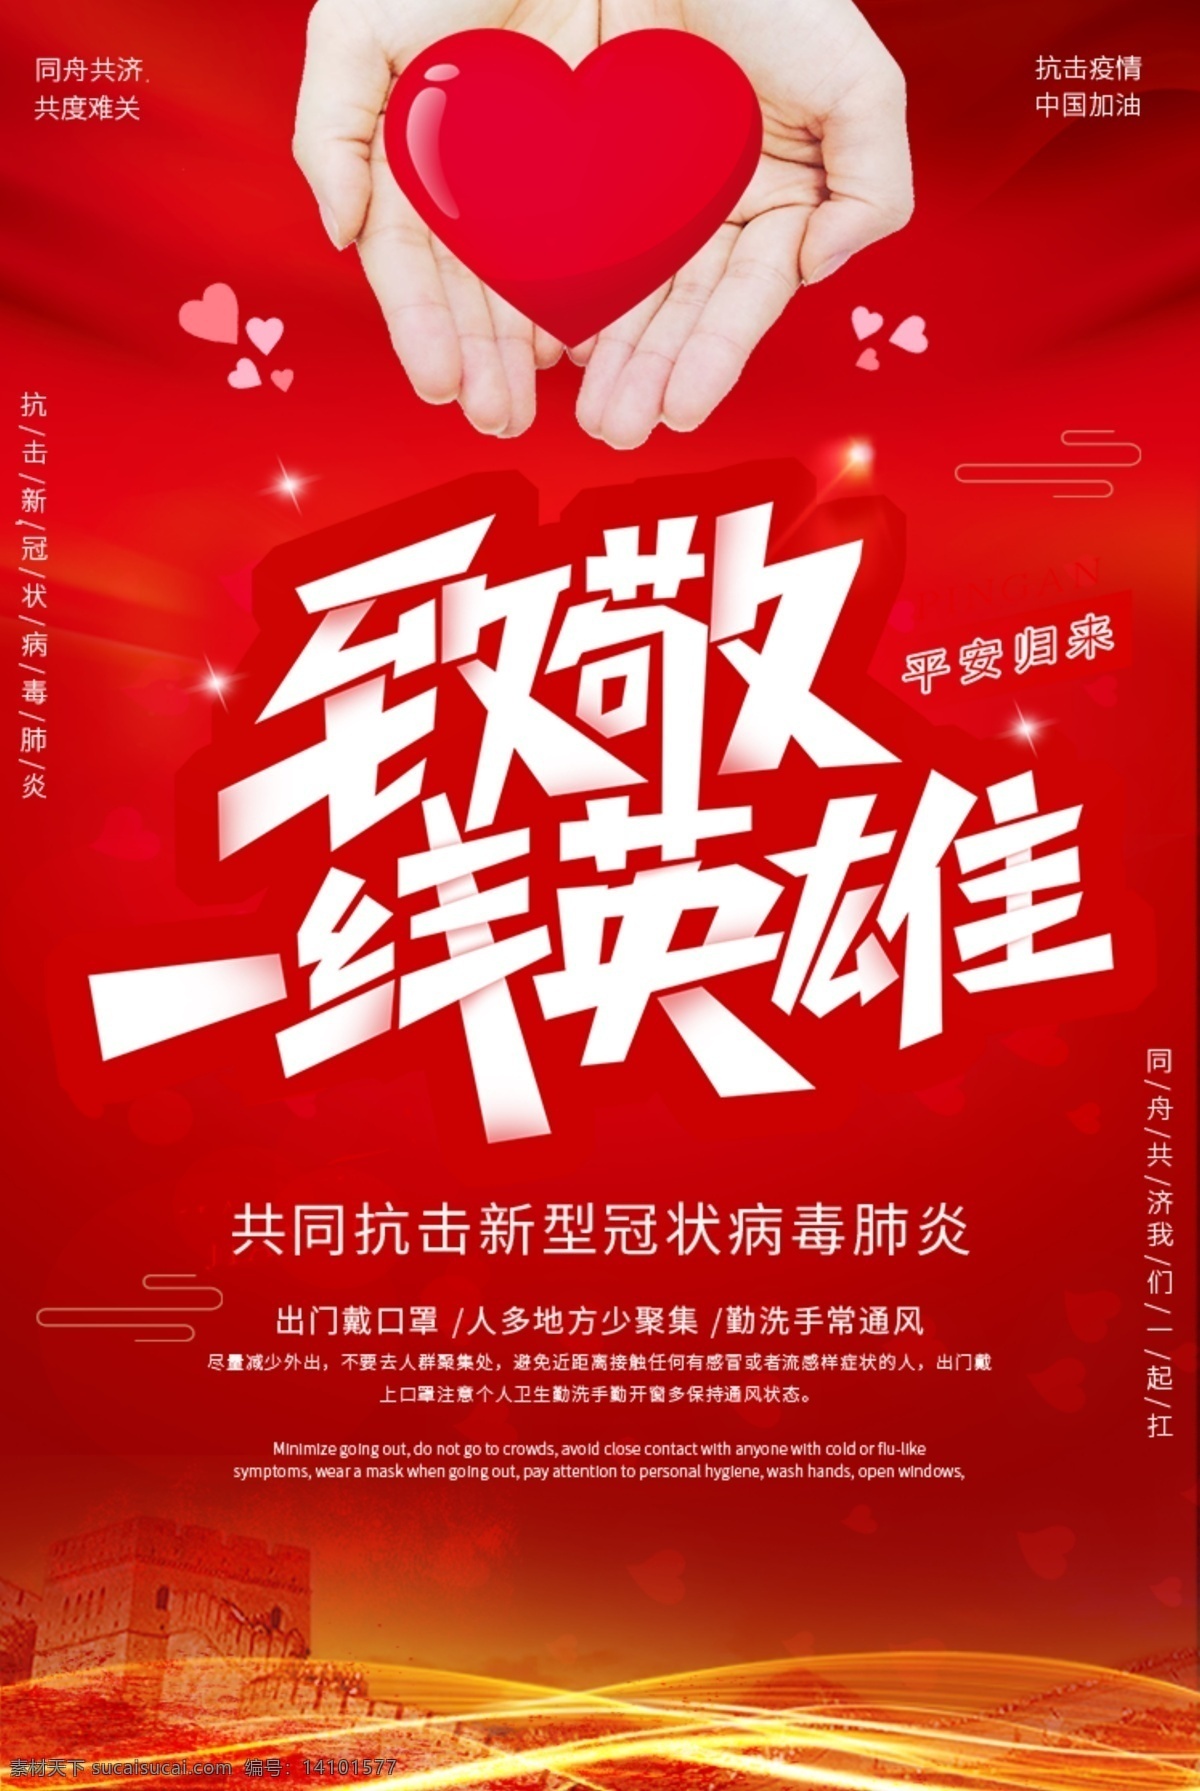 致敬 一线 英雄 中国红 抗击疫情 一线英雄 海报 爱心